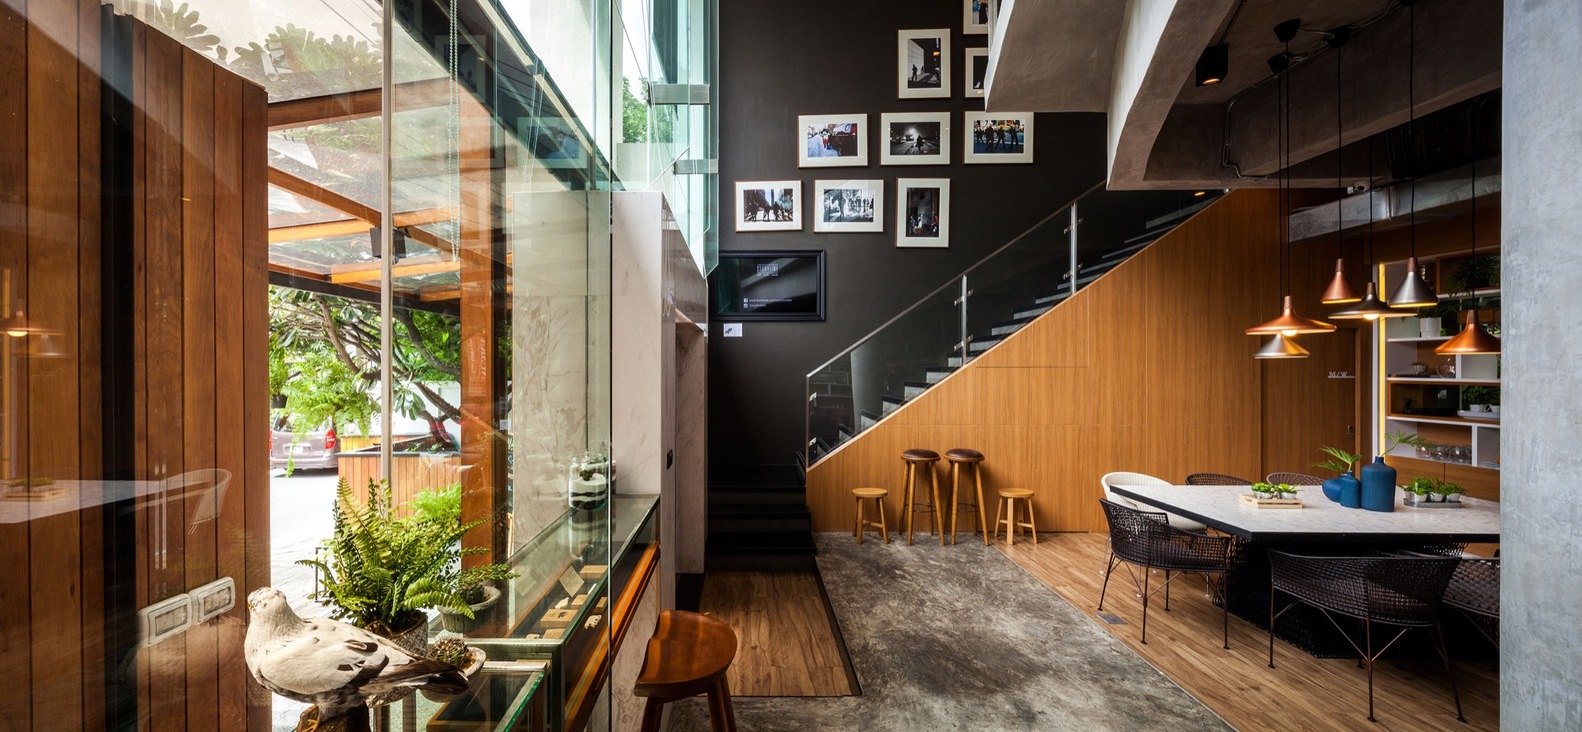 Множество деревянных элементов в интерьере кафе-бара